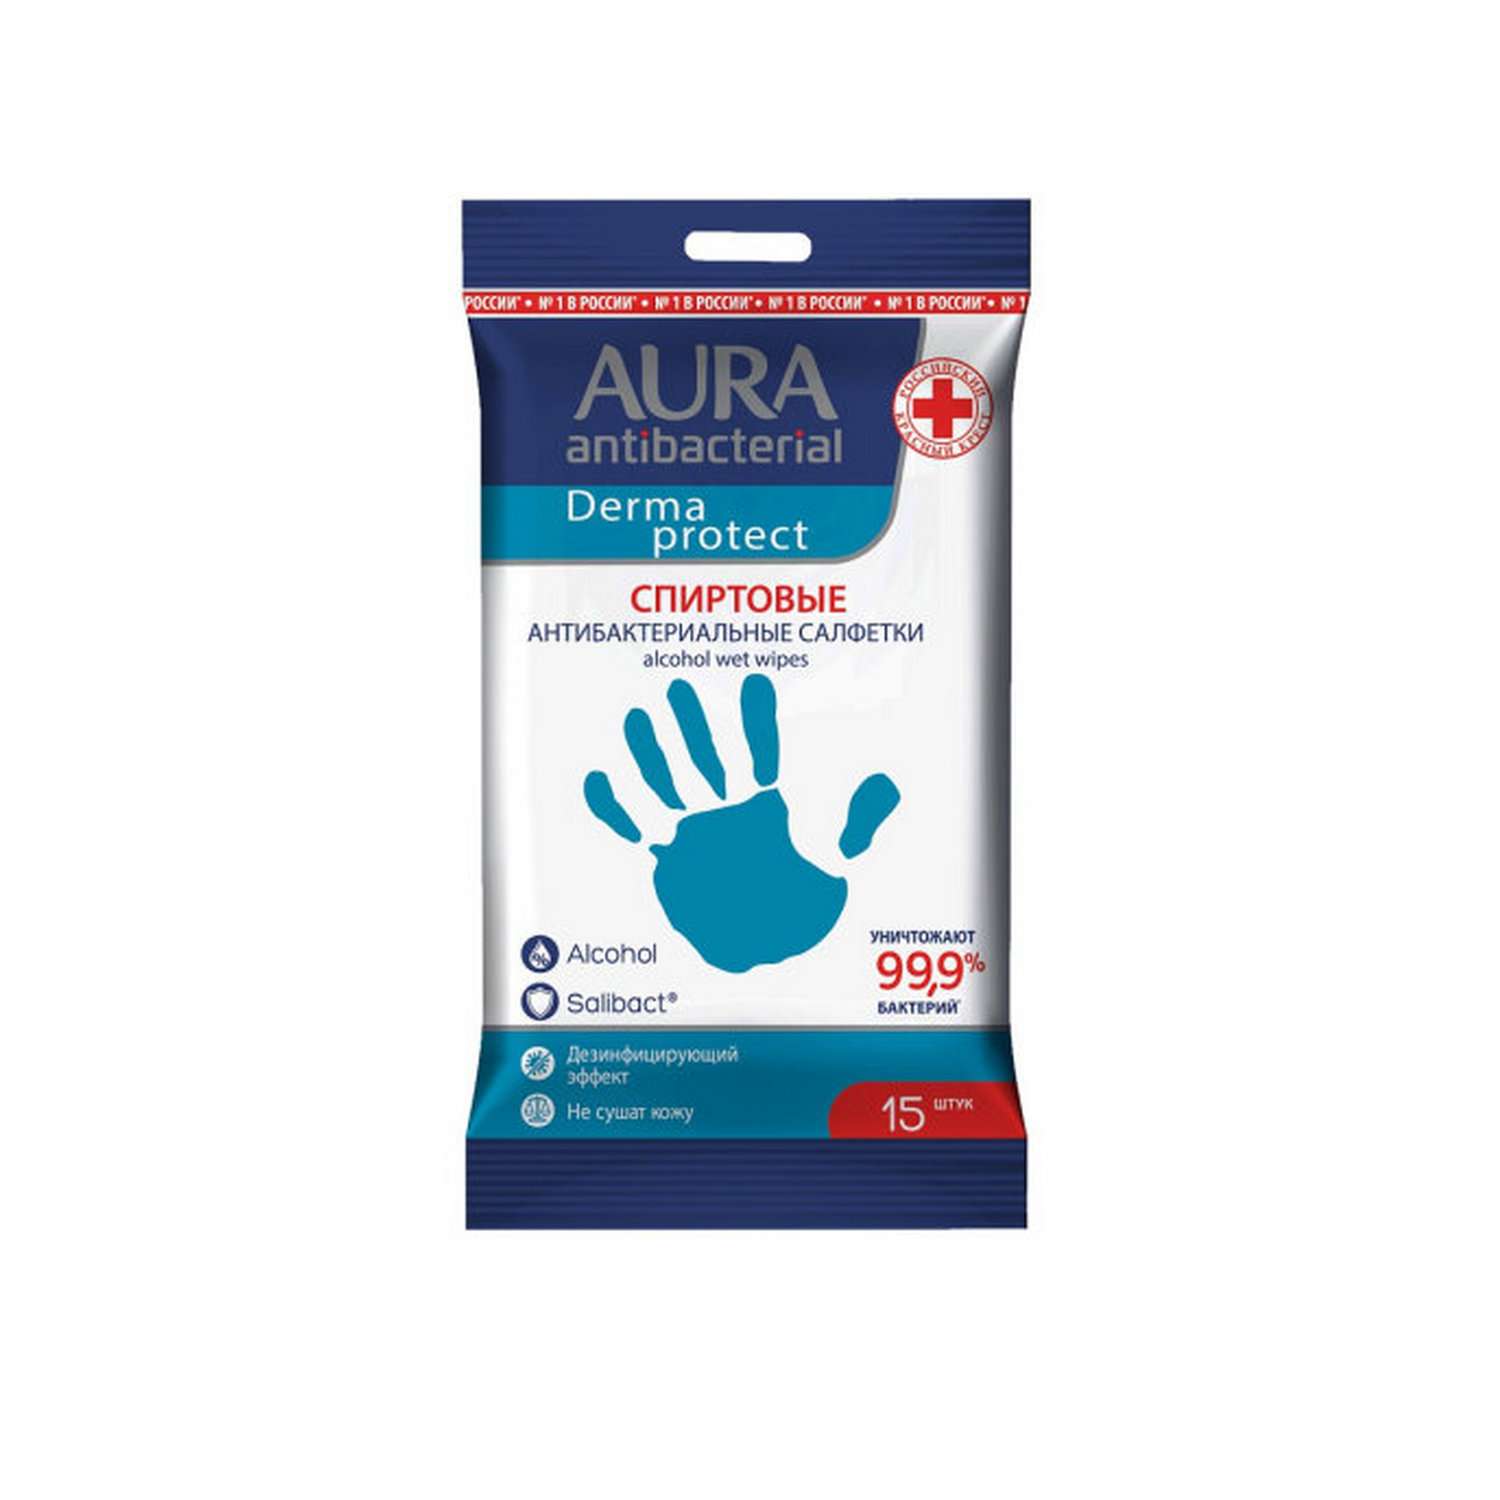 Влажные салфетки AURA Antibacterial Derma Protect спиртовые pocket-pack 15шт - фото 1